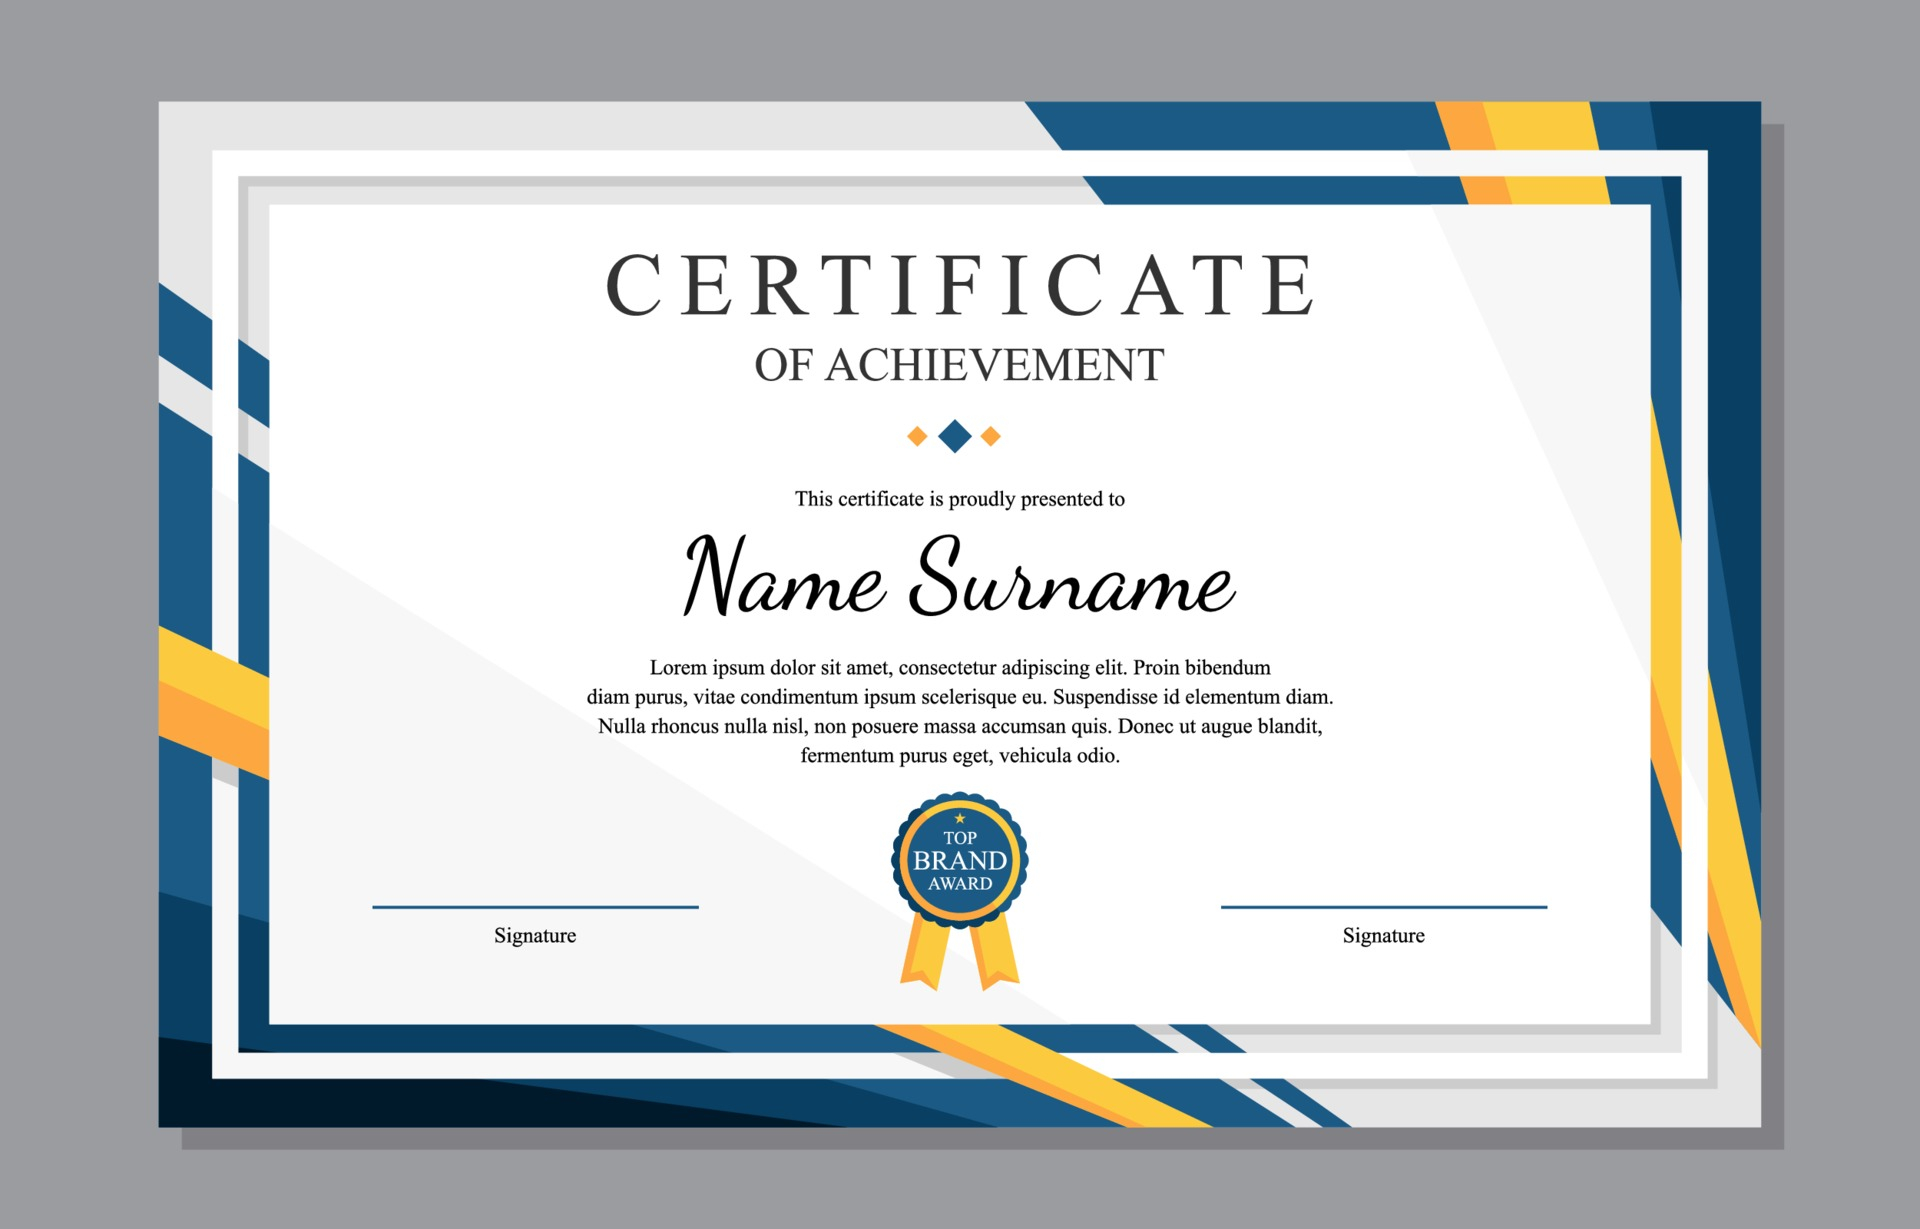 Certificate Templates, Free Certificate Designs Regarding Landscape Certificate Templates